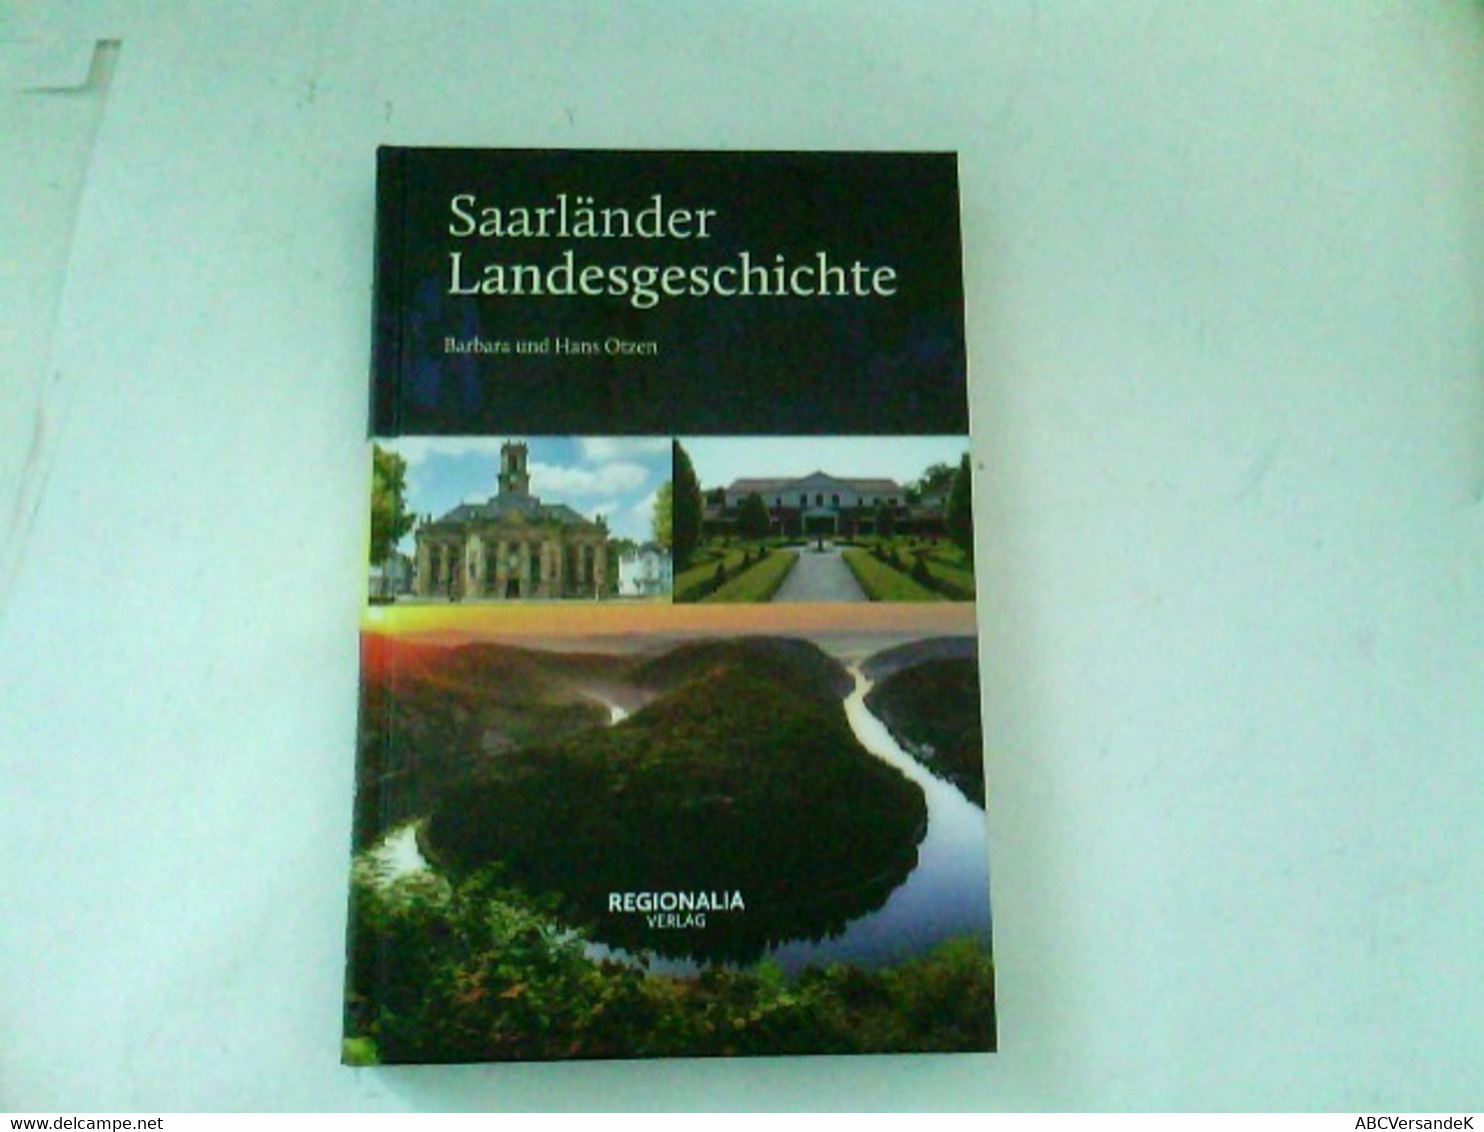 Saarländer Landesgeschichte - Germany (general)